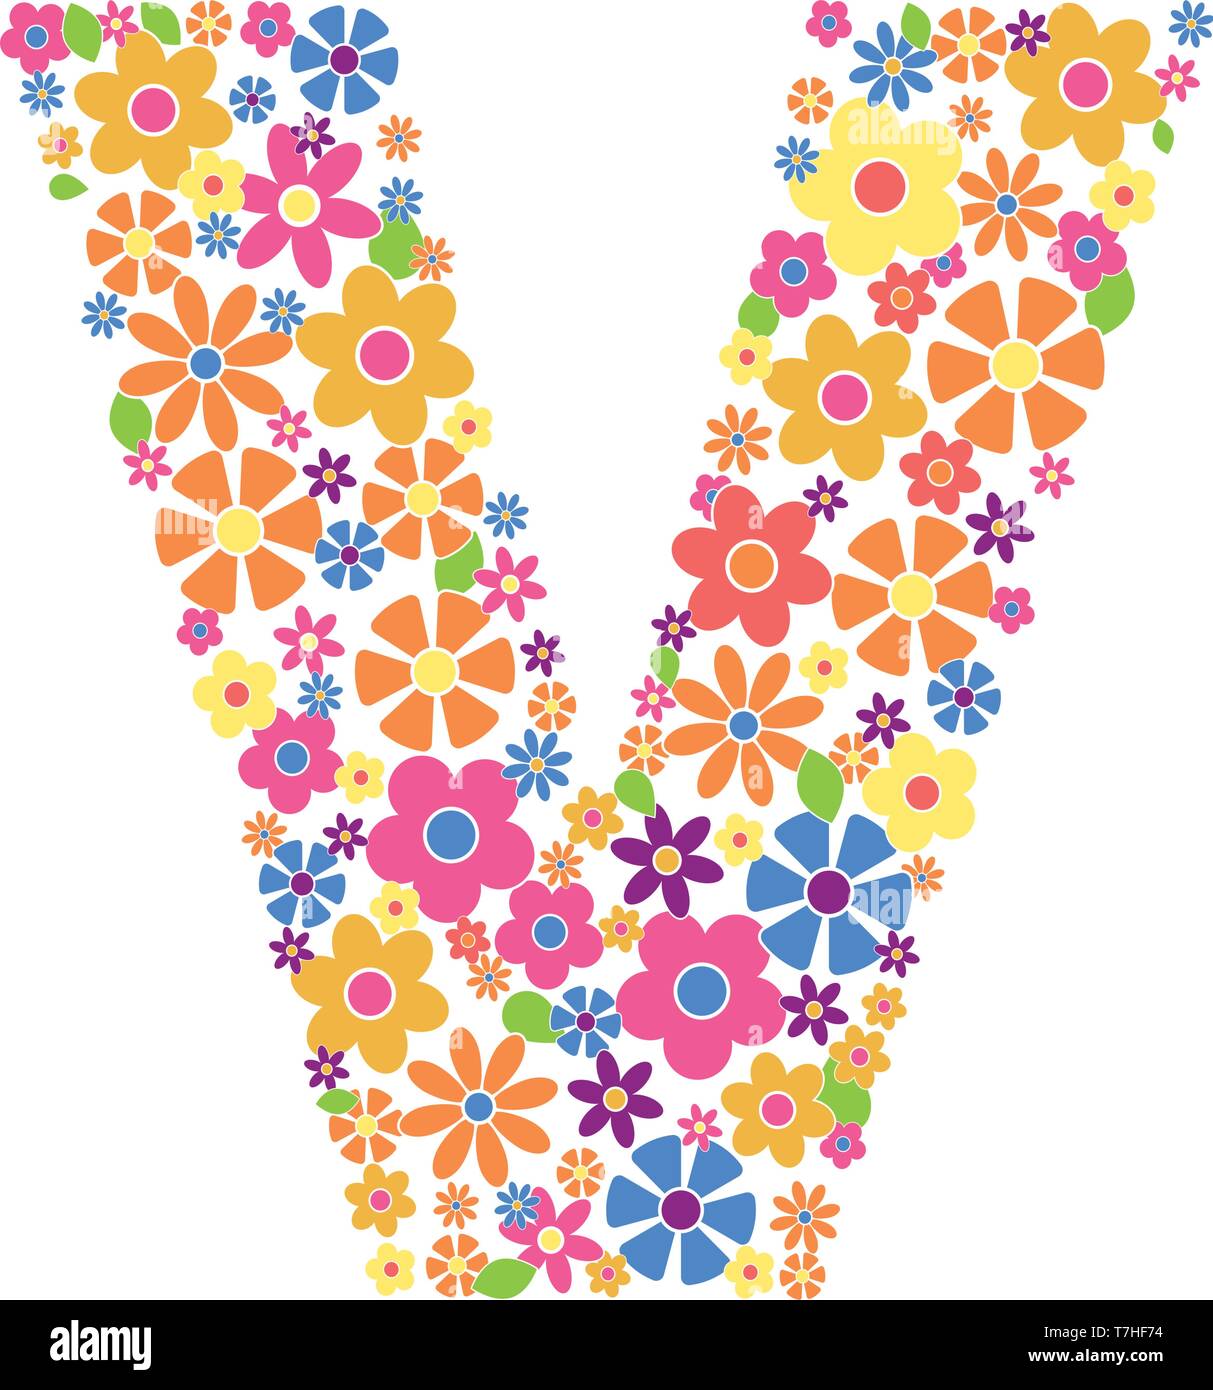 Buchstabe V mit einer Vielzahl von bunten Blumen auf weißem Hintergrund Vektor-illustration isoliert gefüllt Stock Vektor